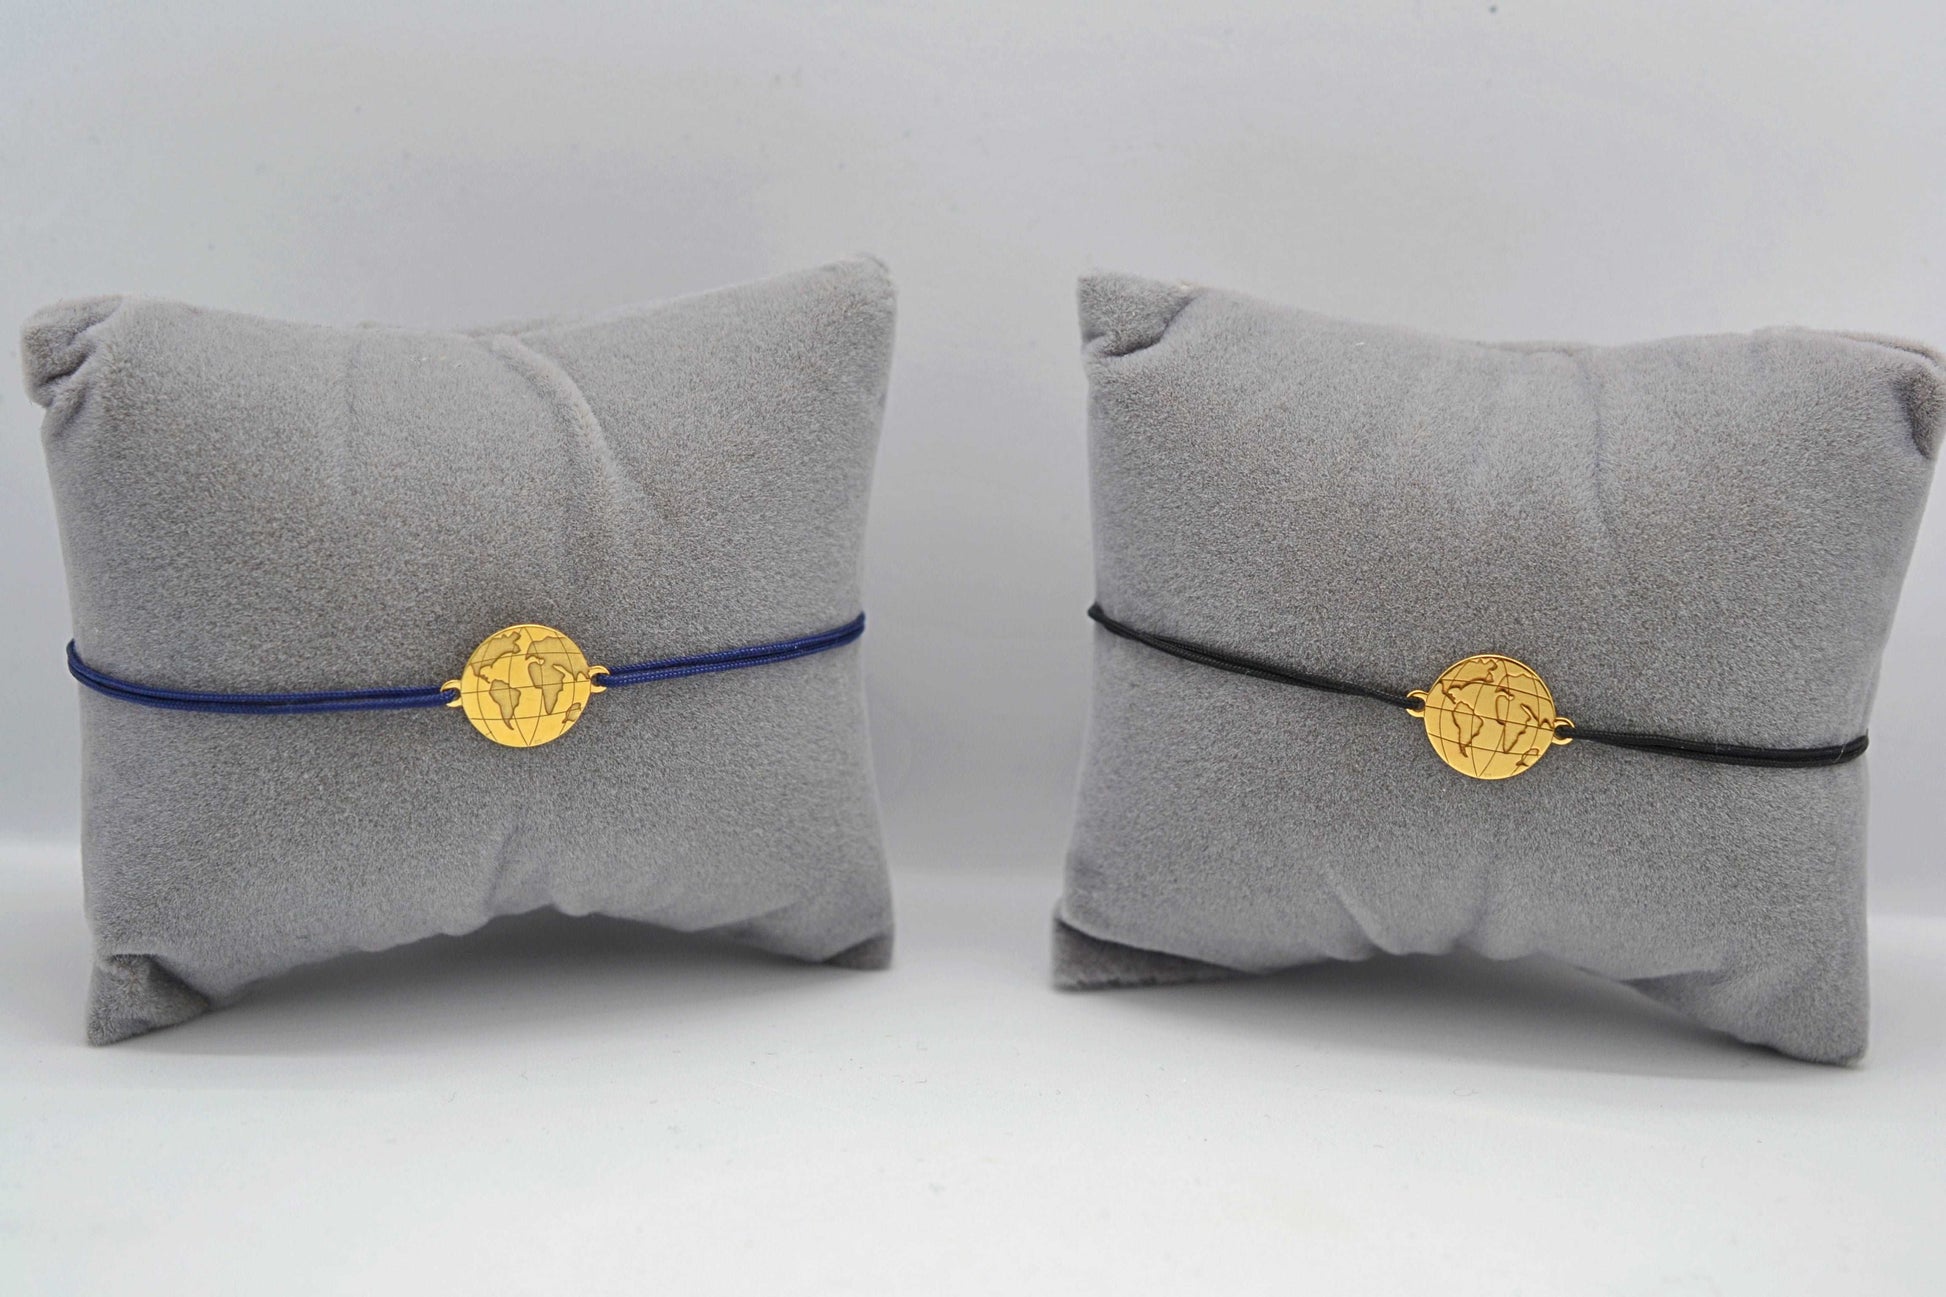 Zwei goldene Weltkarte Armbänder eins mit blauem und eins mit schwarzem Band jeweils auf einem grauen Schmuckkissen